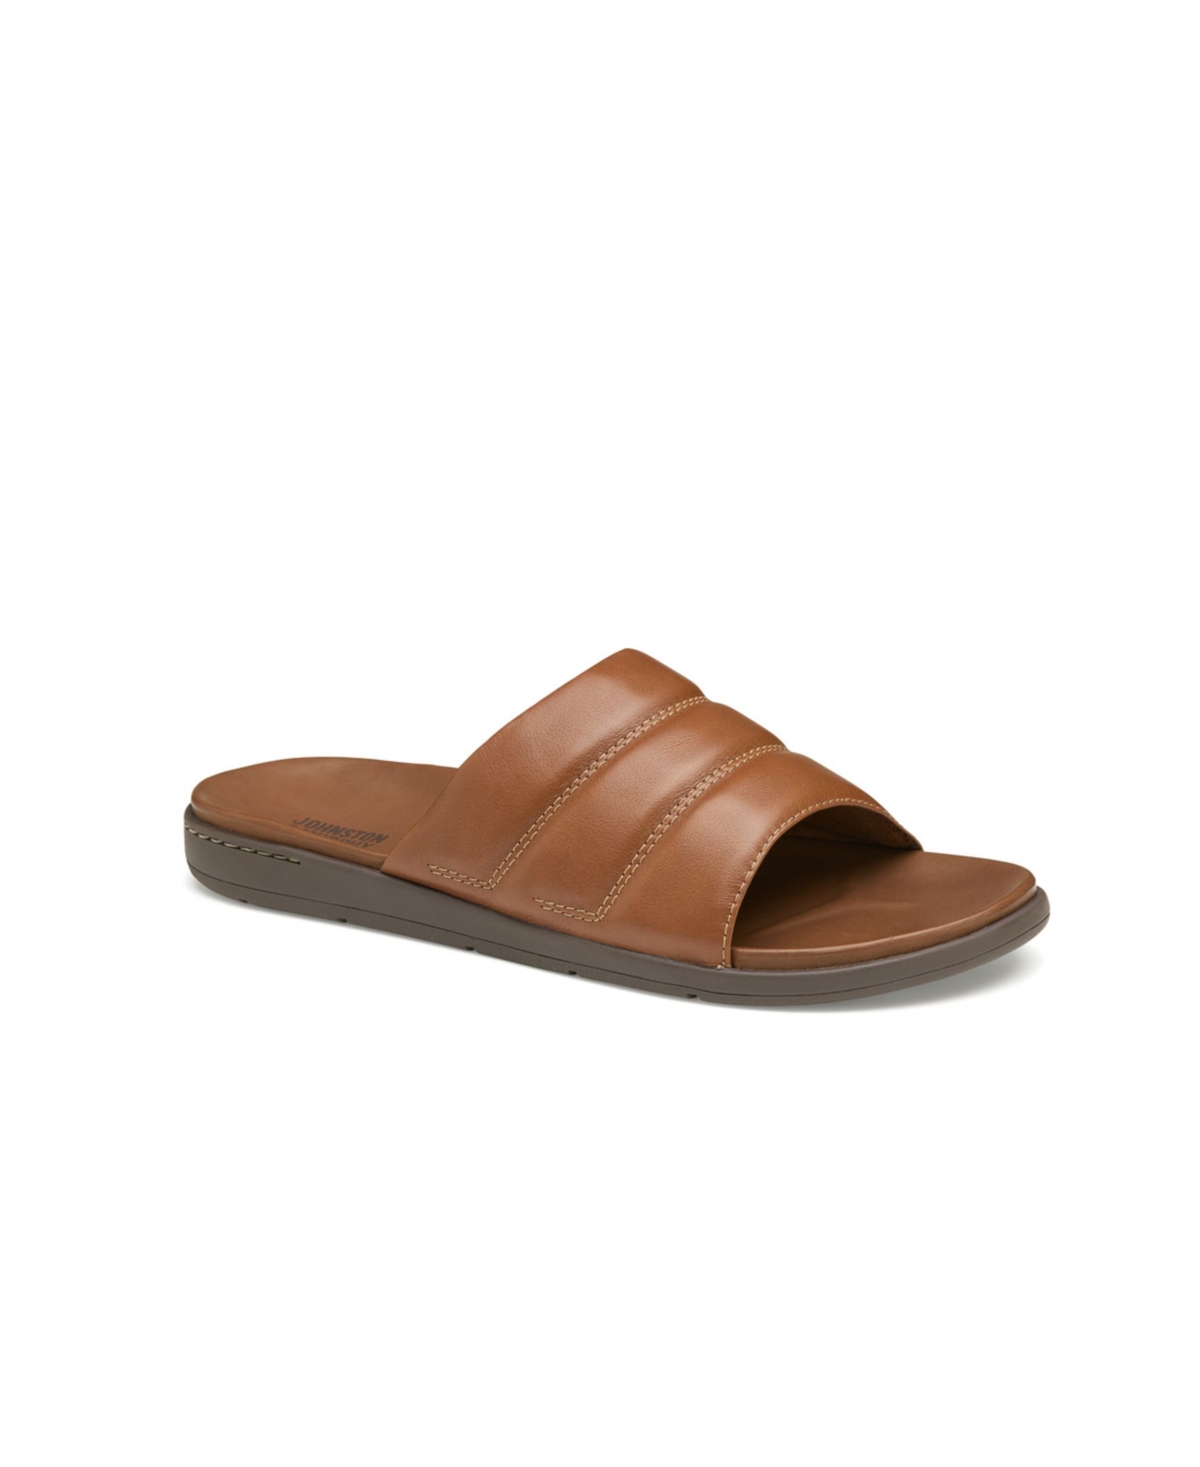 Men's Branson Slide Sandals - Tan